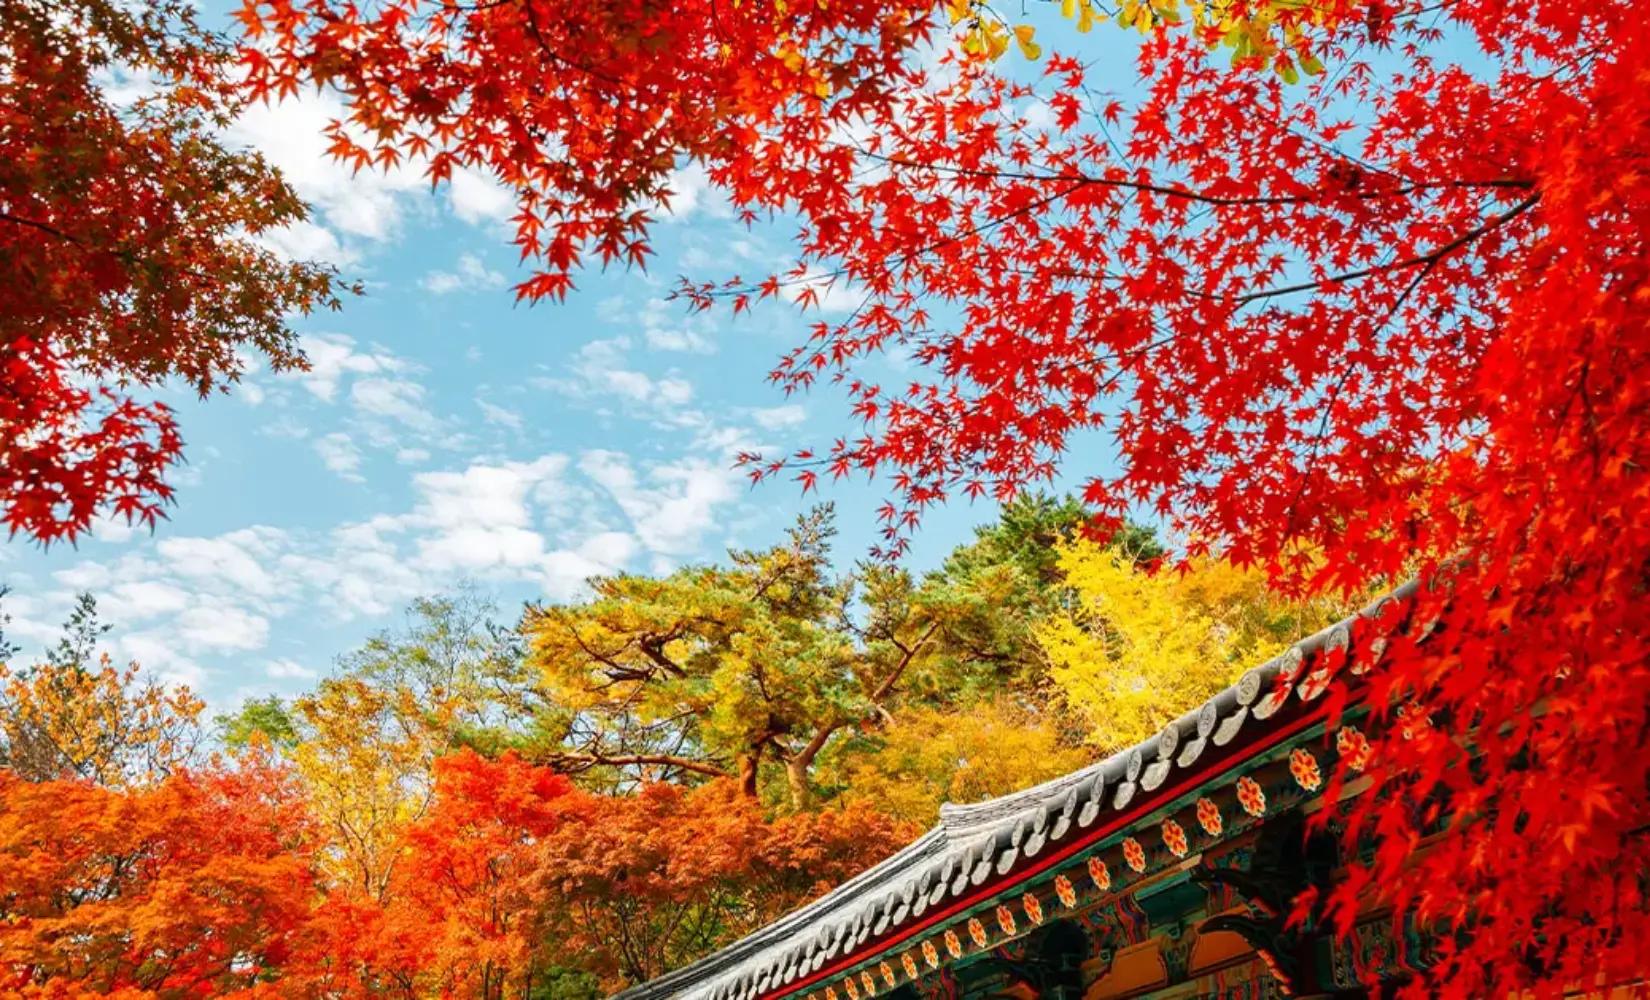 秋の紅葉ランダムツアー(釜山発)